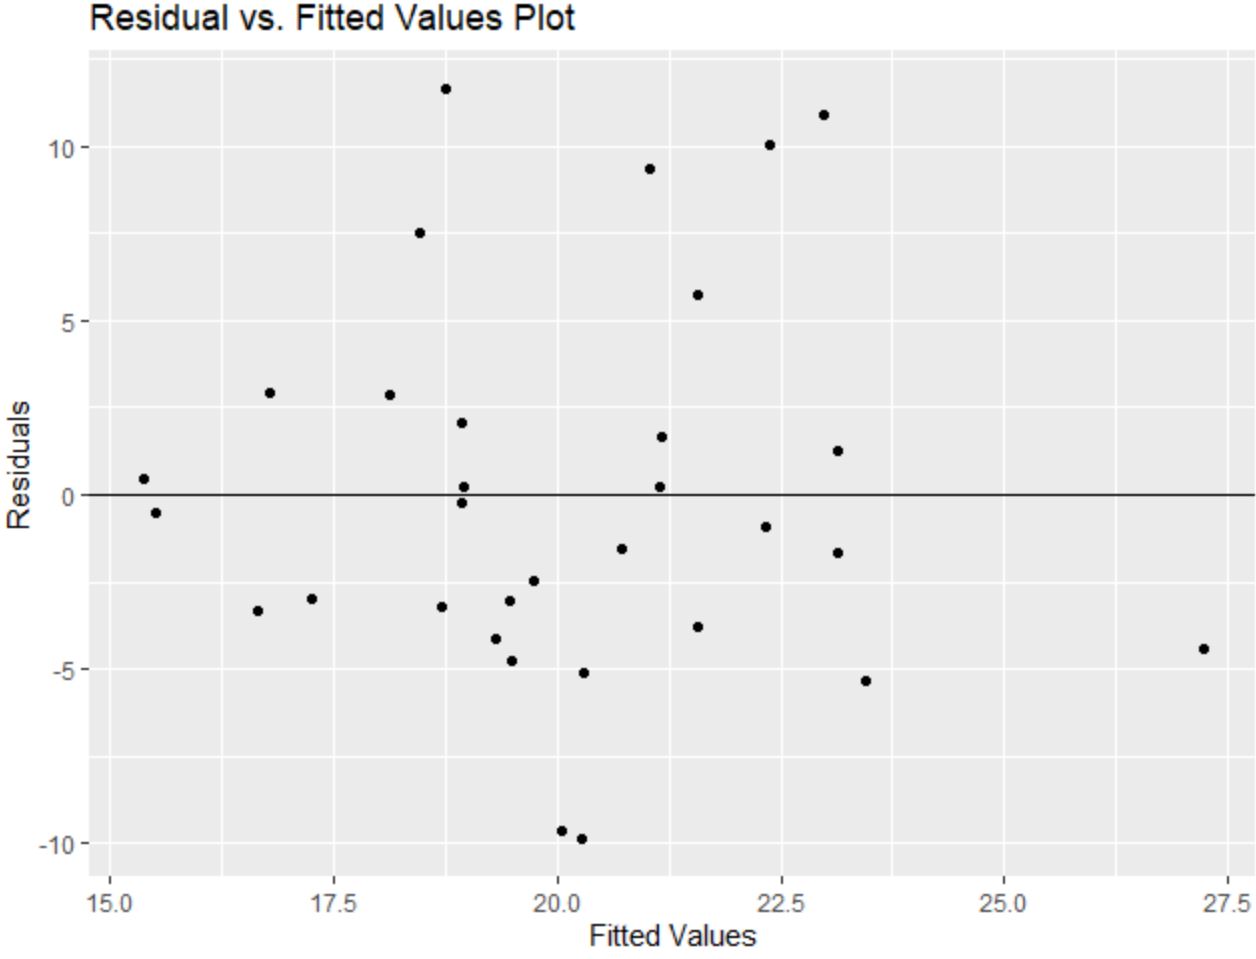 ggplot2 tracé des valeurs résiduelles par rapport aux valeurs ajustées avec les étiquettes des axes